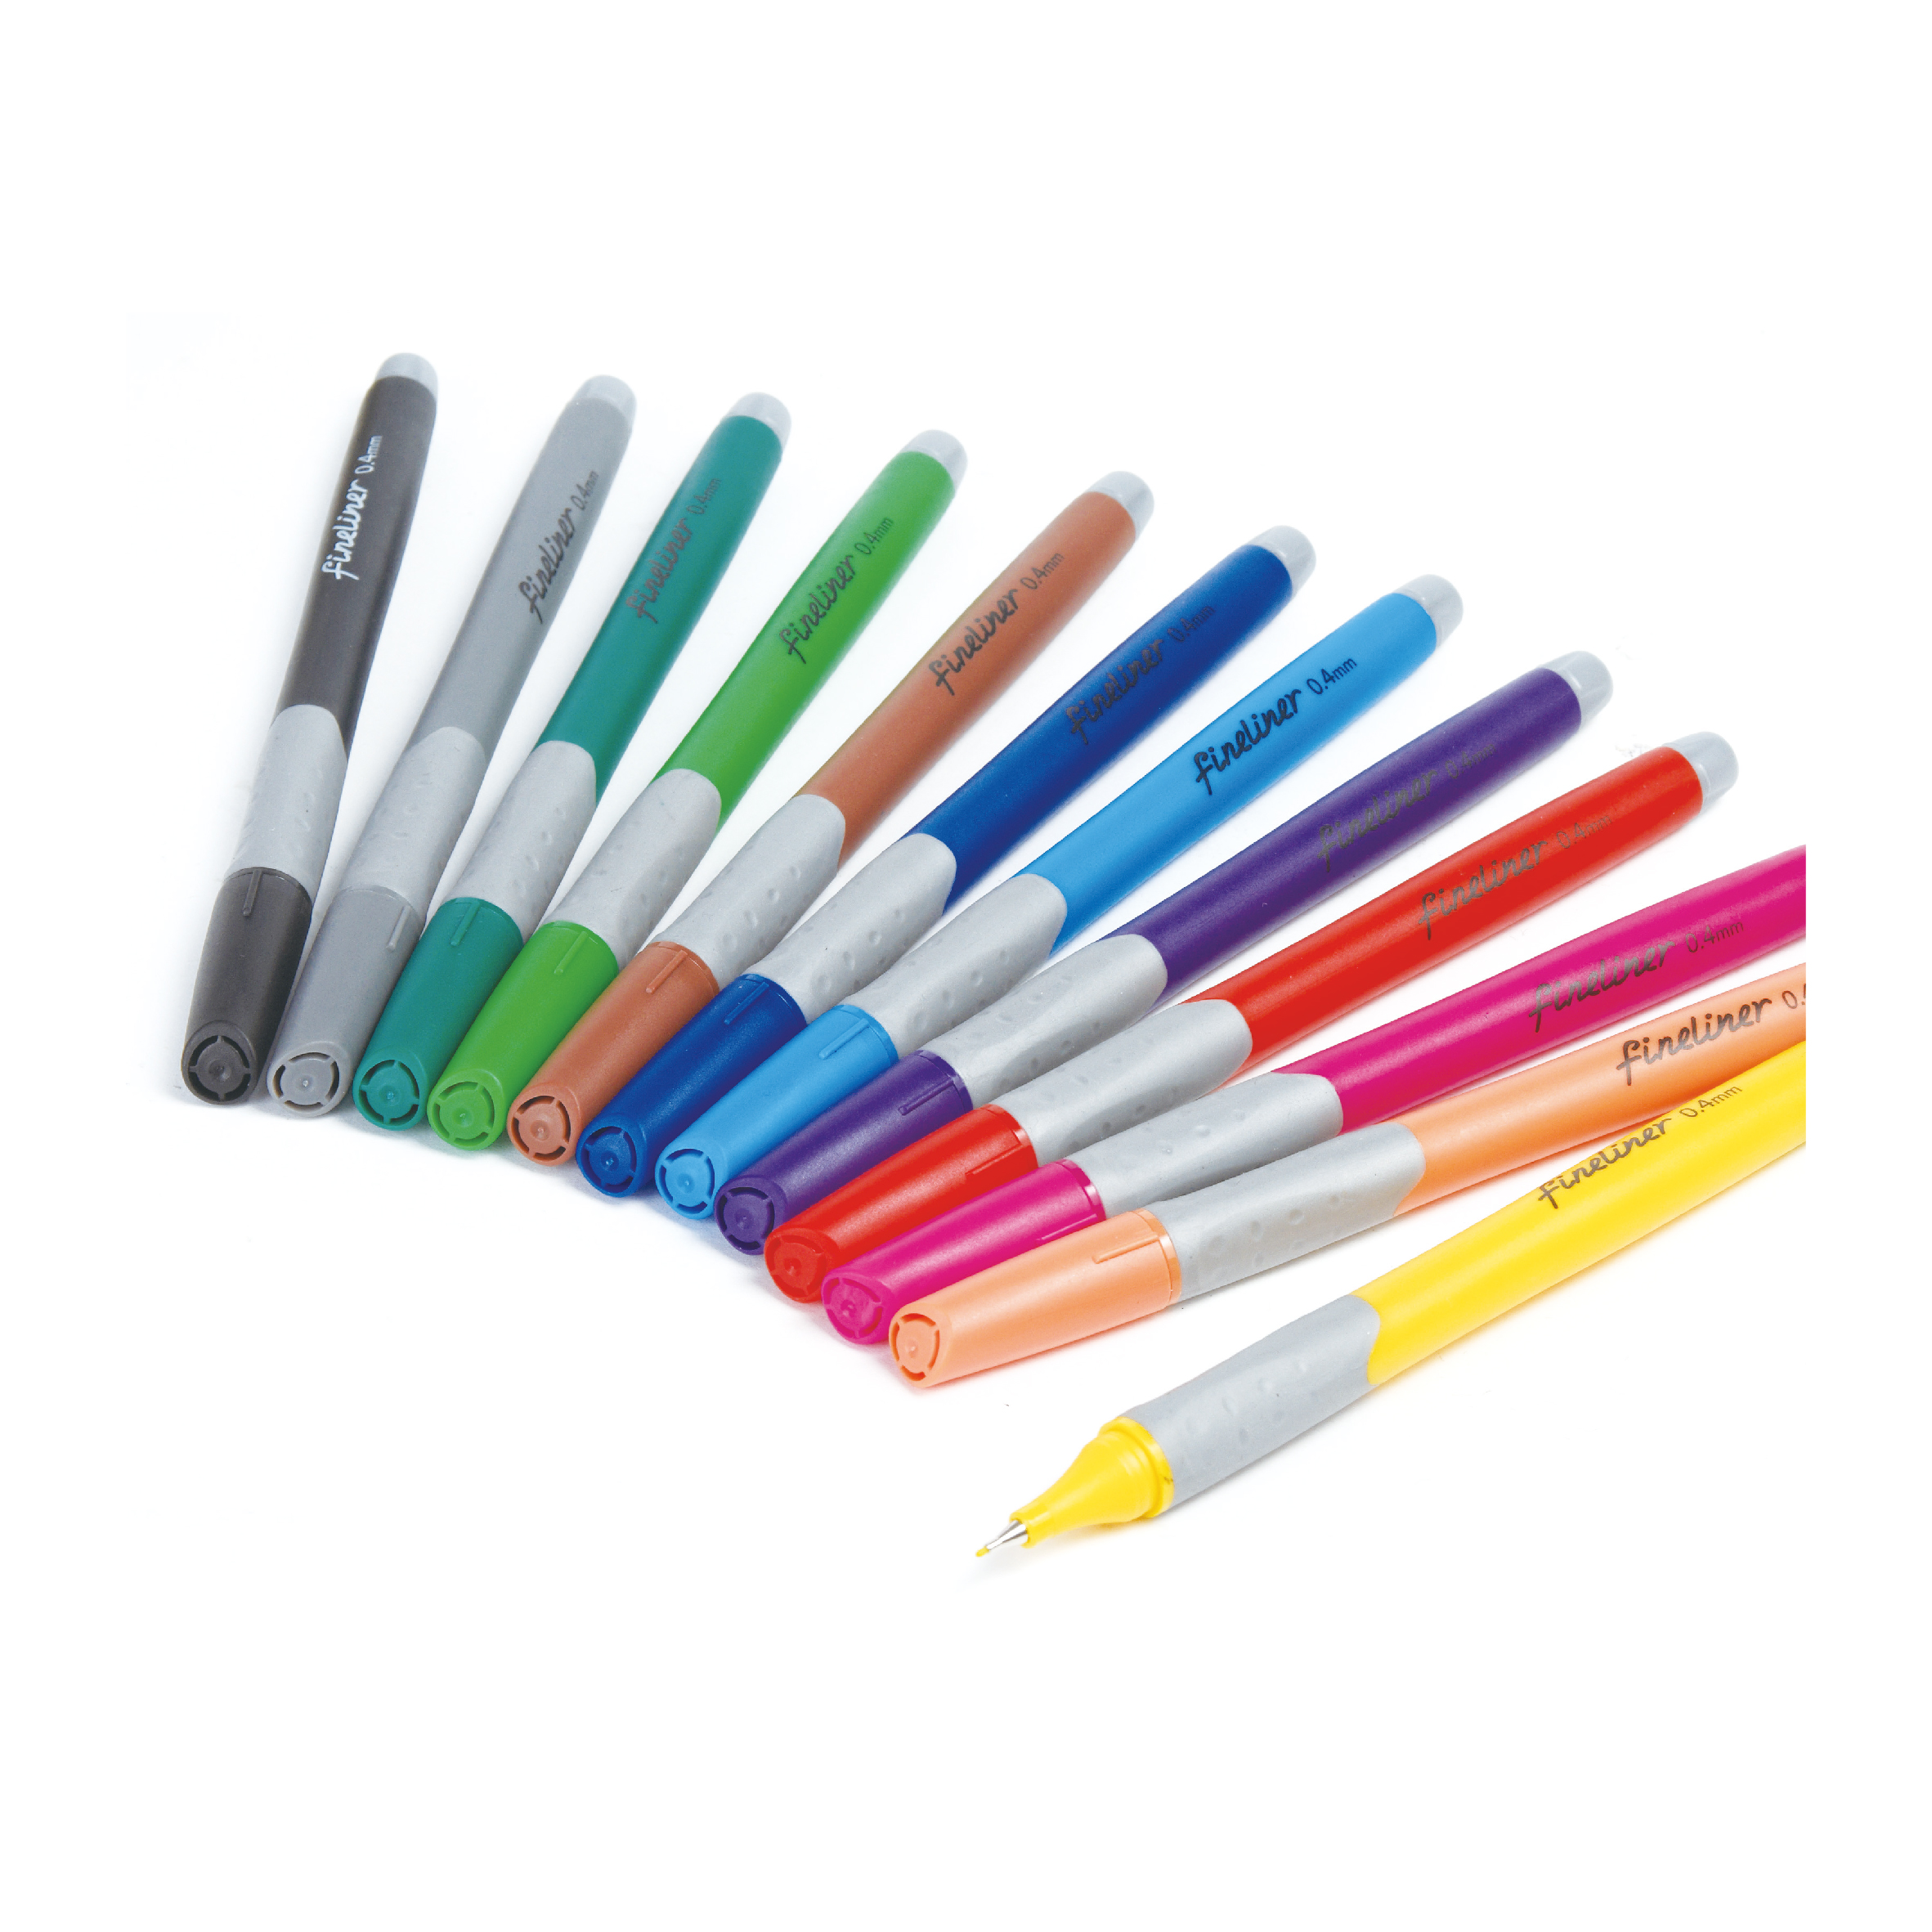 Fineliner - Fineliner Marker pen - Extra Fine Tip